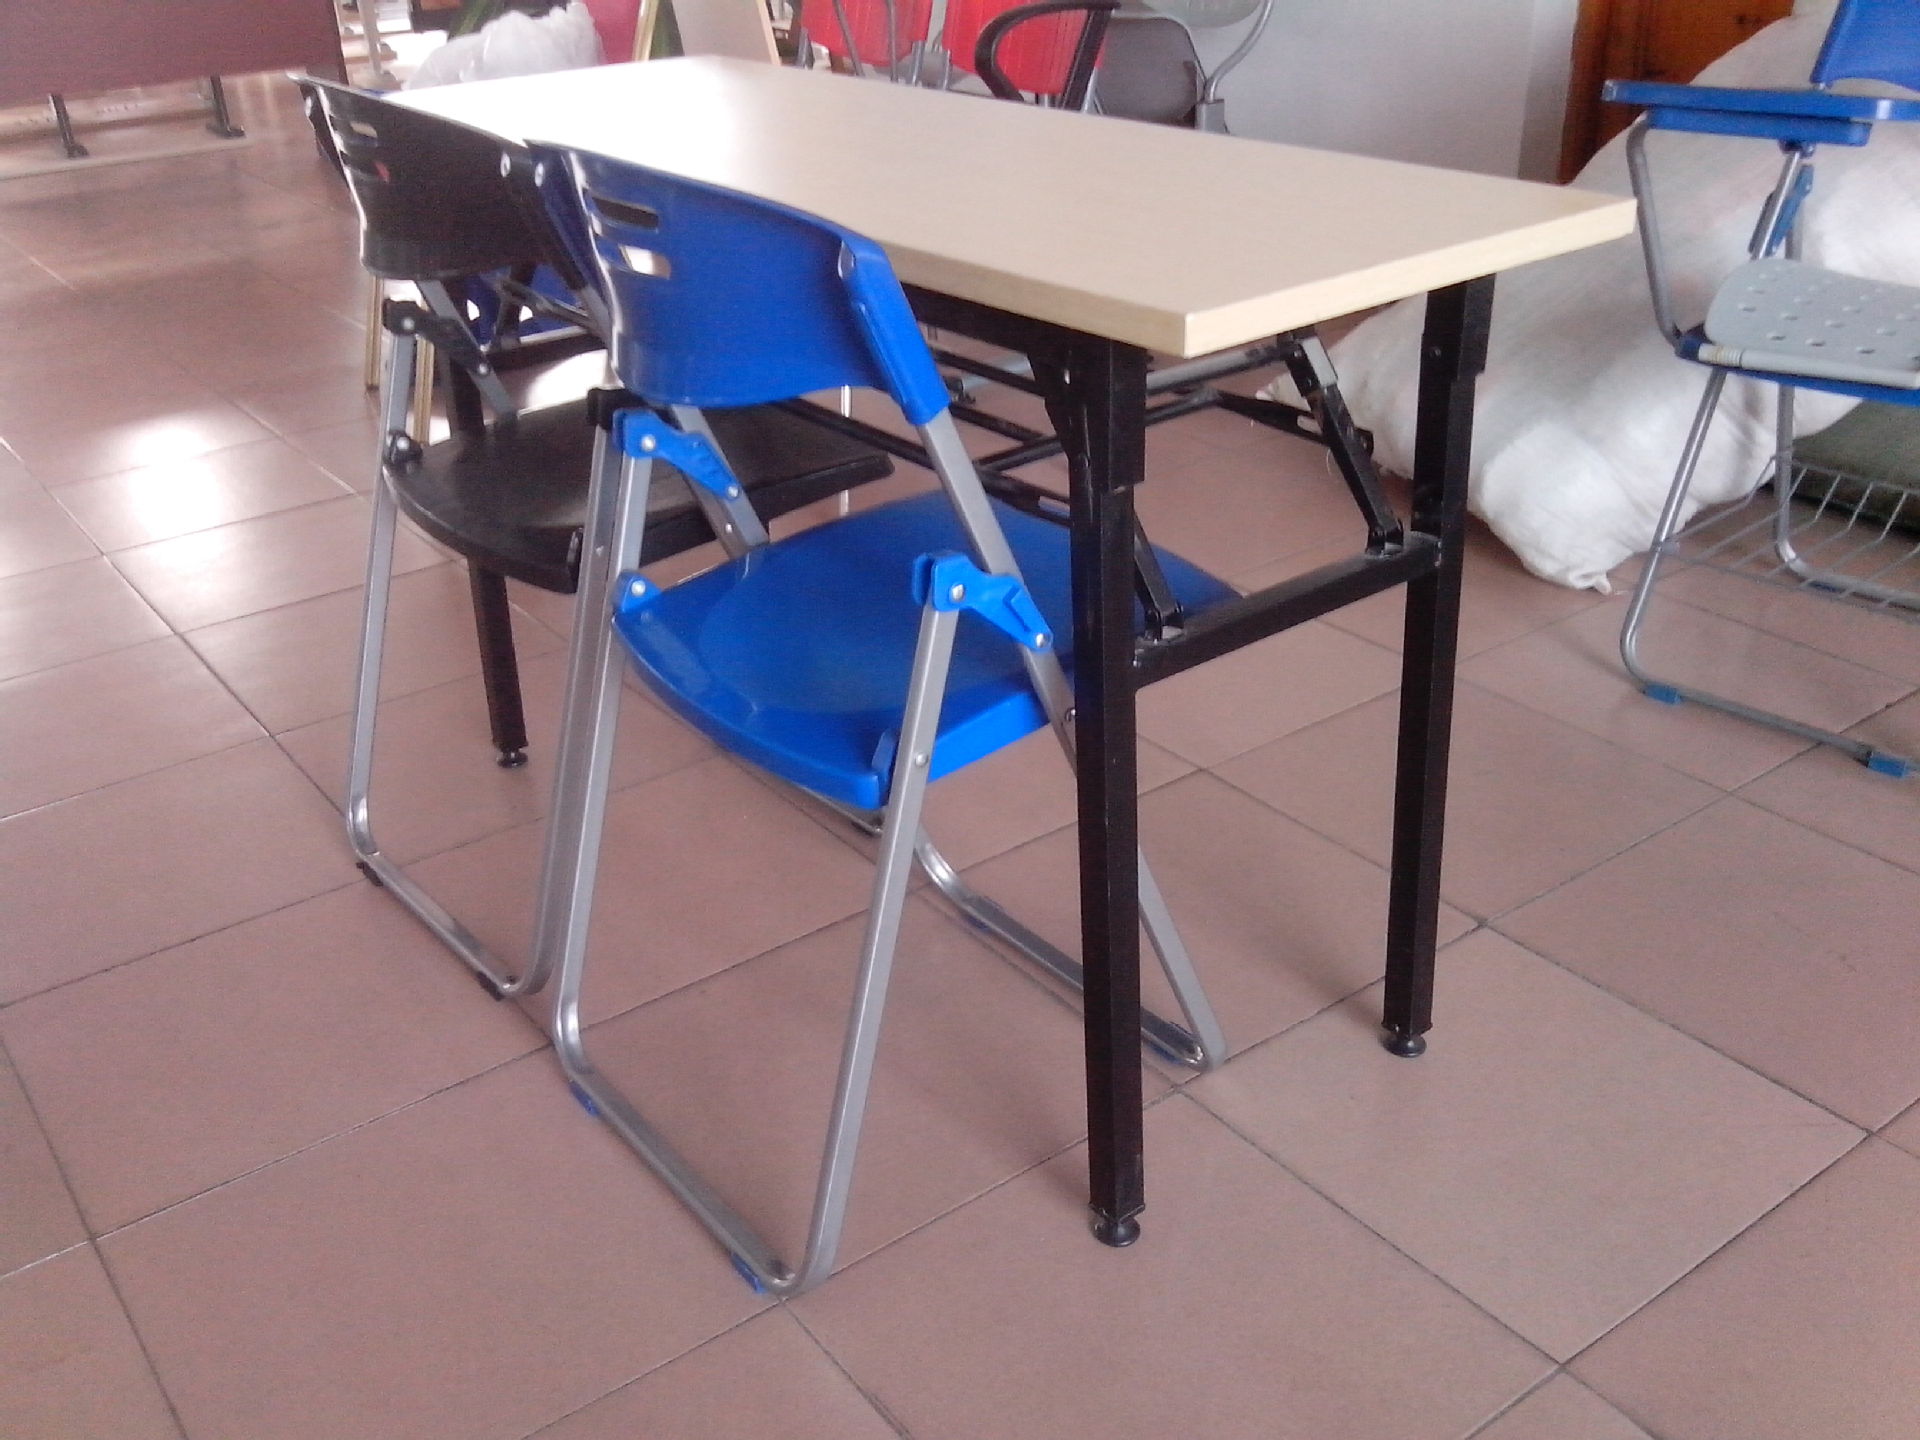 厂家直销长条桌,培训长桌,折叠桌子,多功能桌椅,上课桌椅